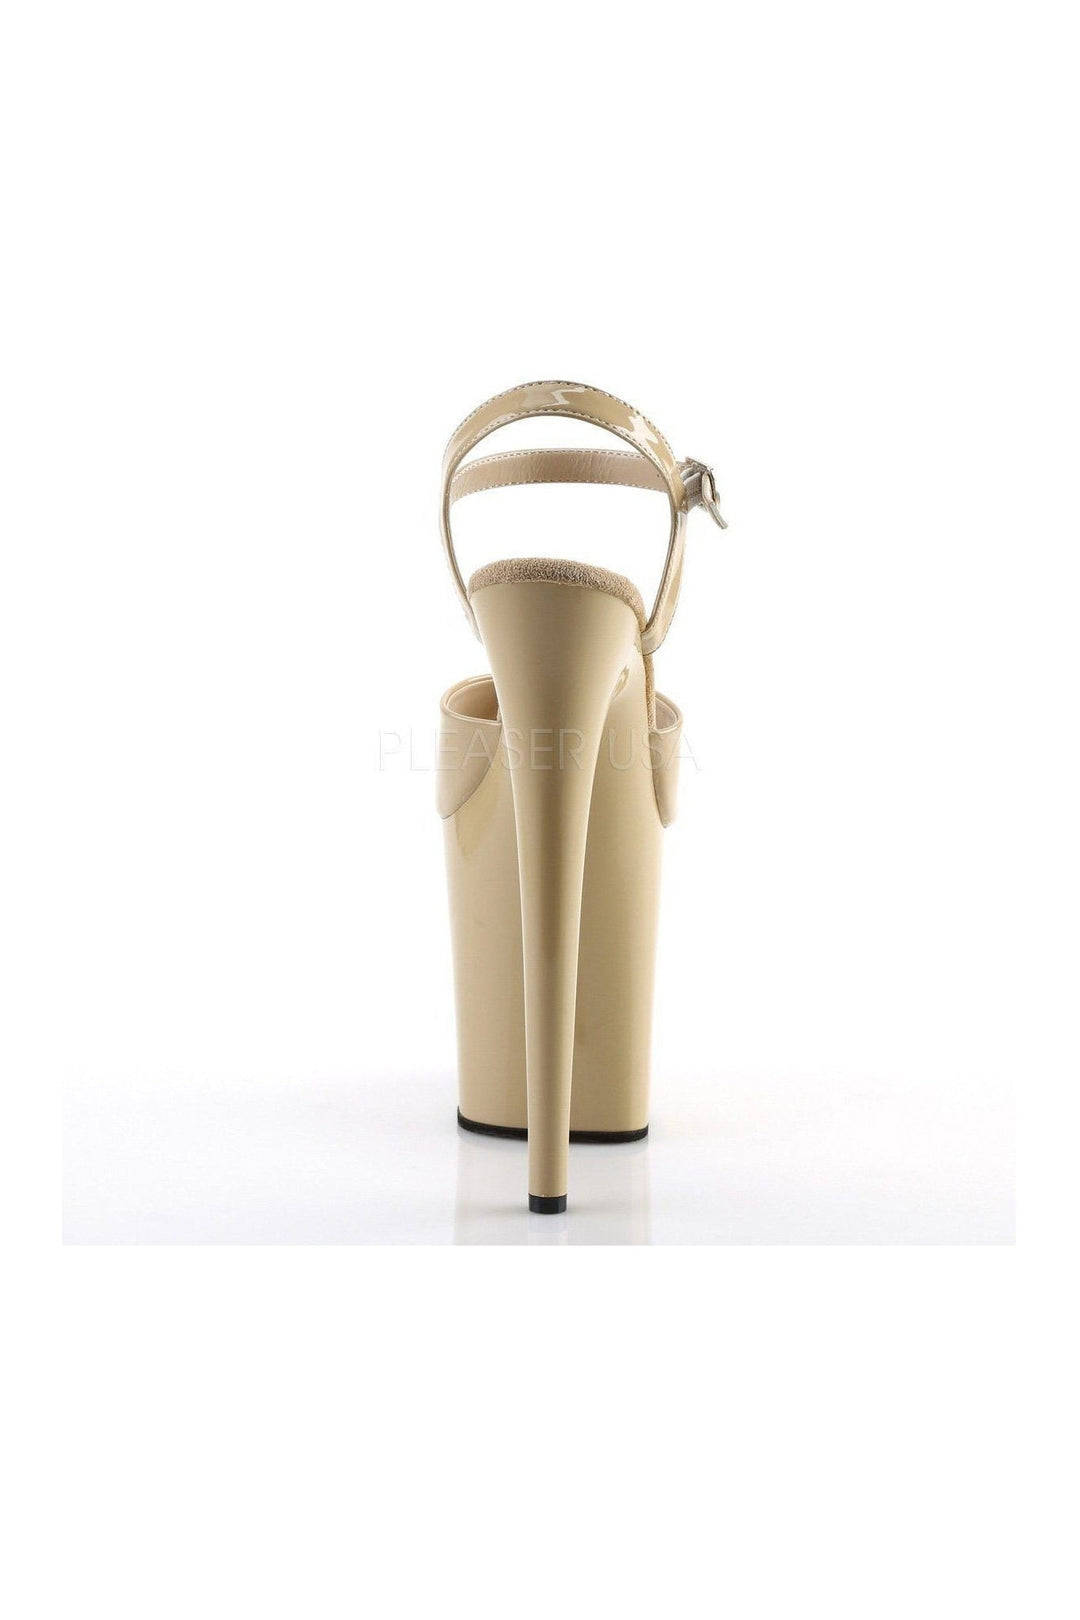 FLAMINGO-809 Platform Sandal | Bone Patent-Pleaser-Sandals-SEXYSHOES.COM